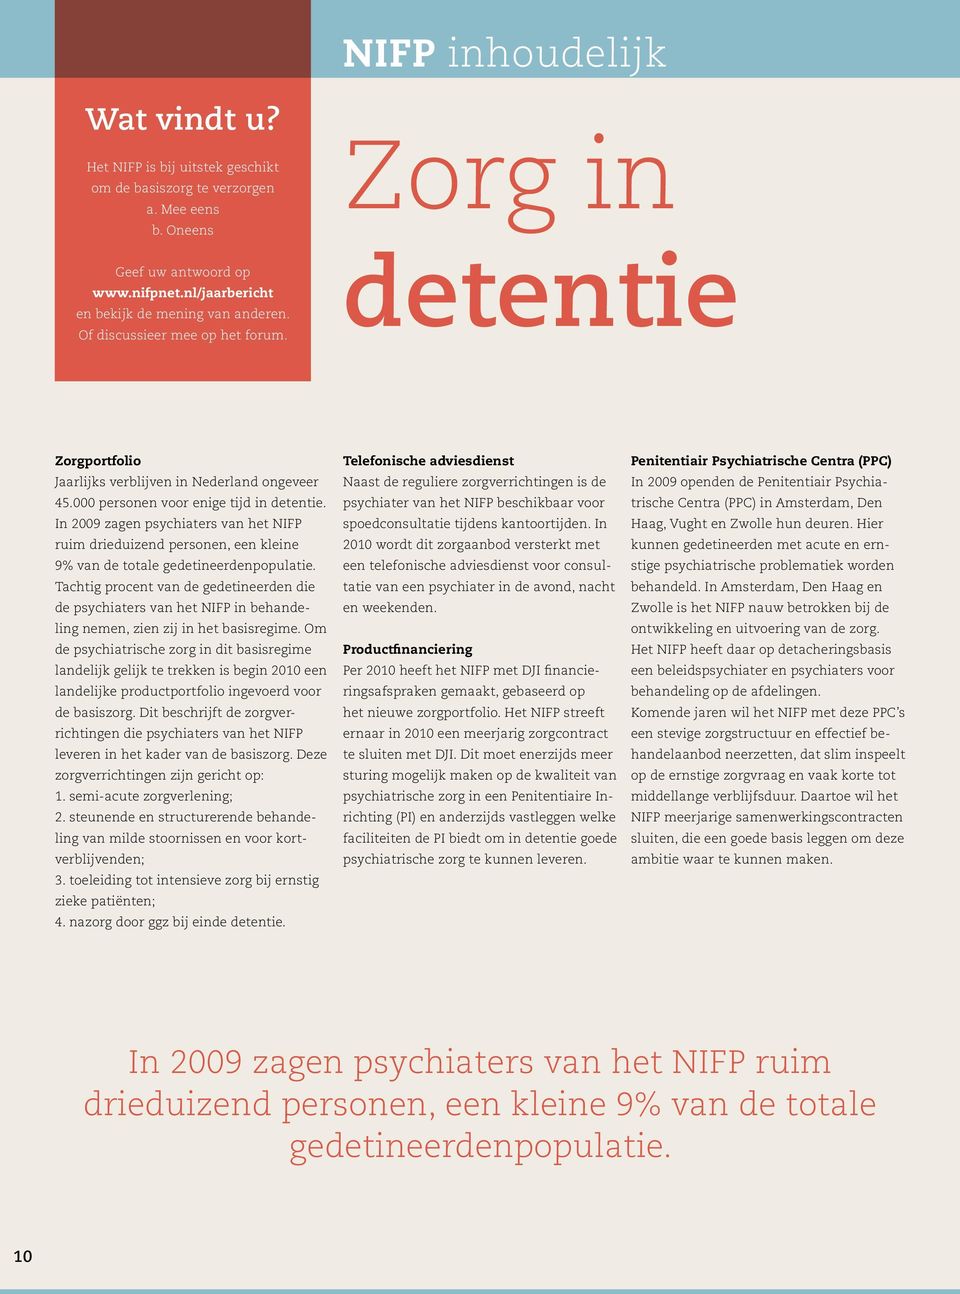 In 2009 zagen psychiaters van het NIFP ruim drieduizend personen, een kleine 9% van de totale gedetineerdenpopulatie.